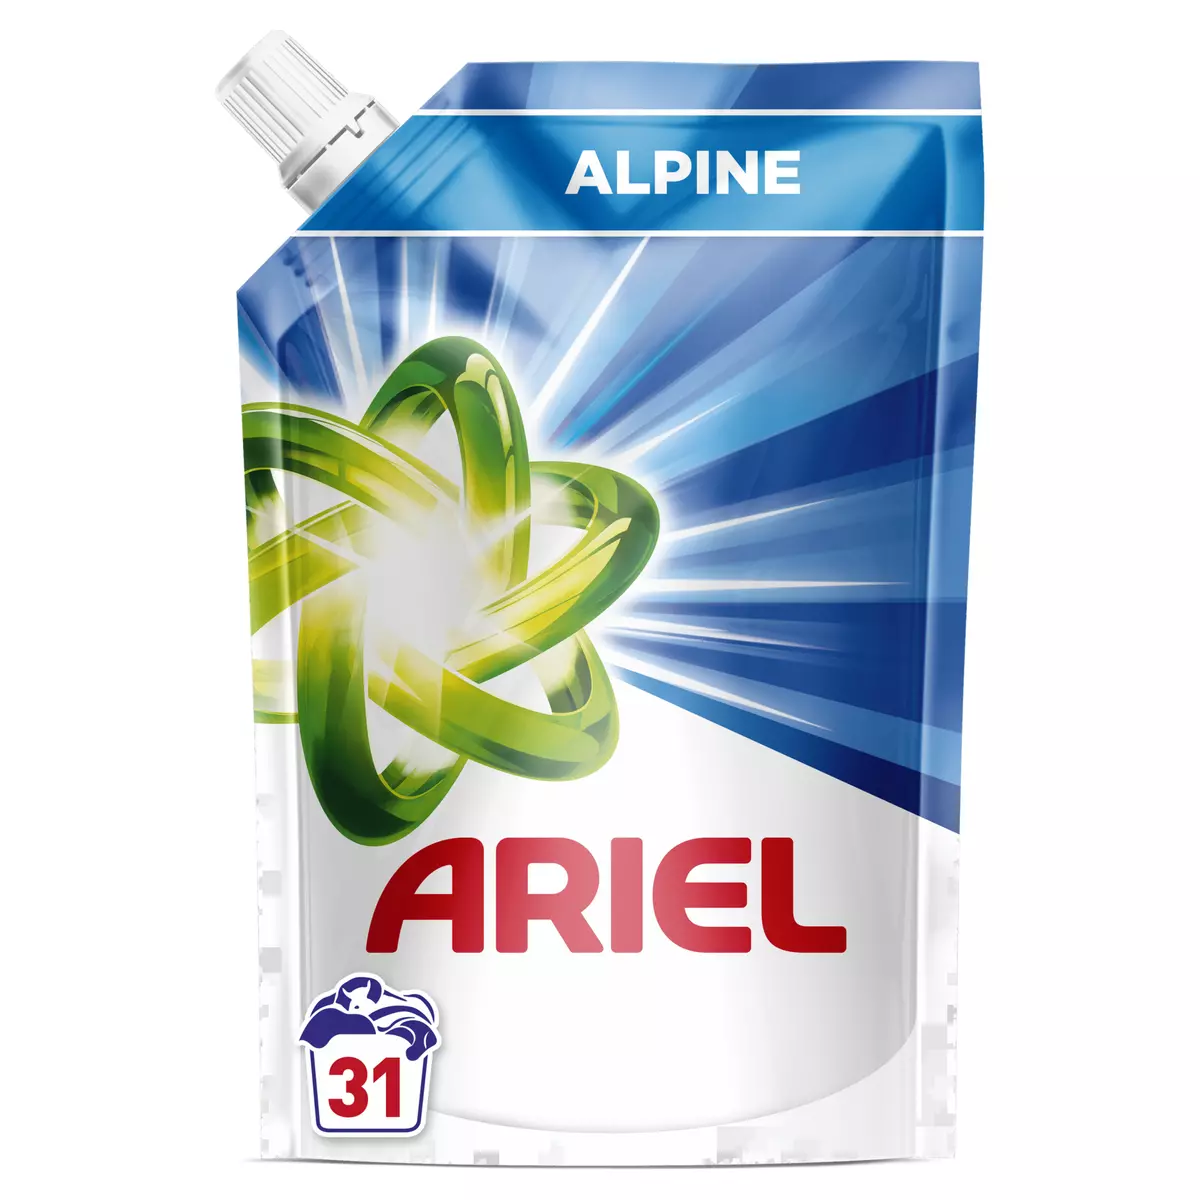 ARIEL Ecorecharge lessive alpine 31 lavages 1.55l